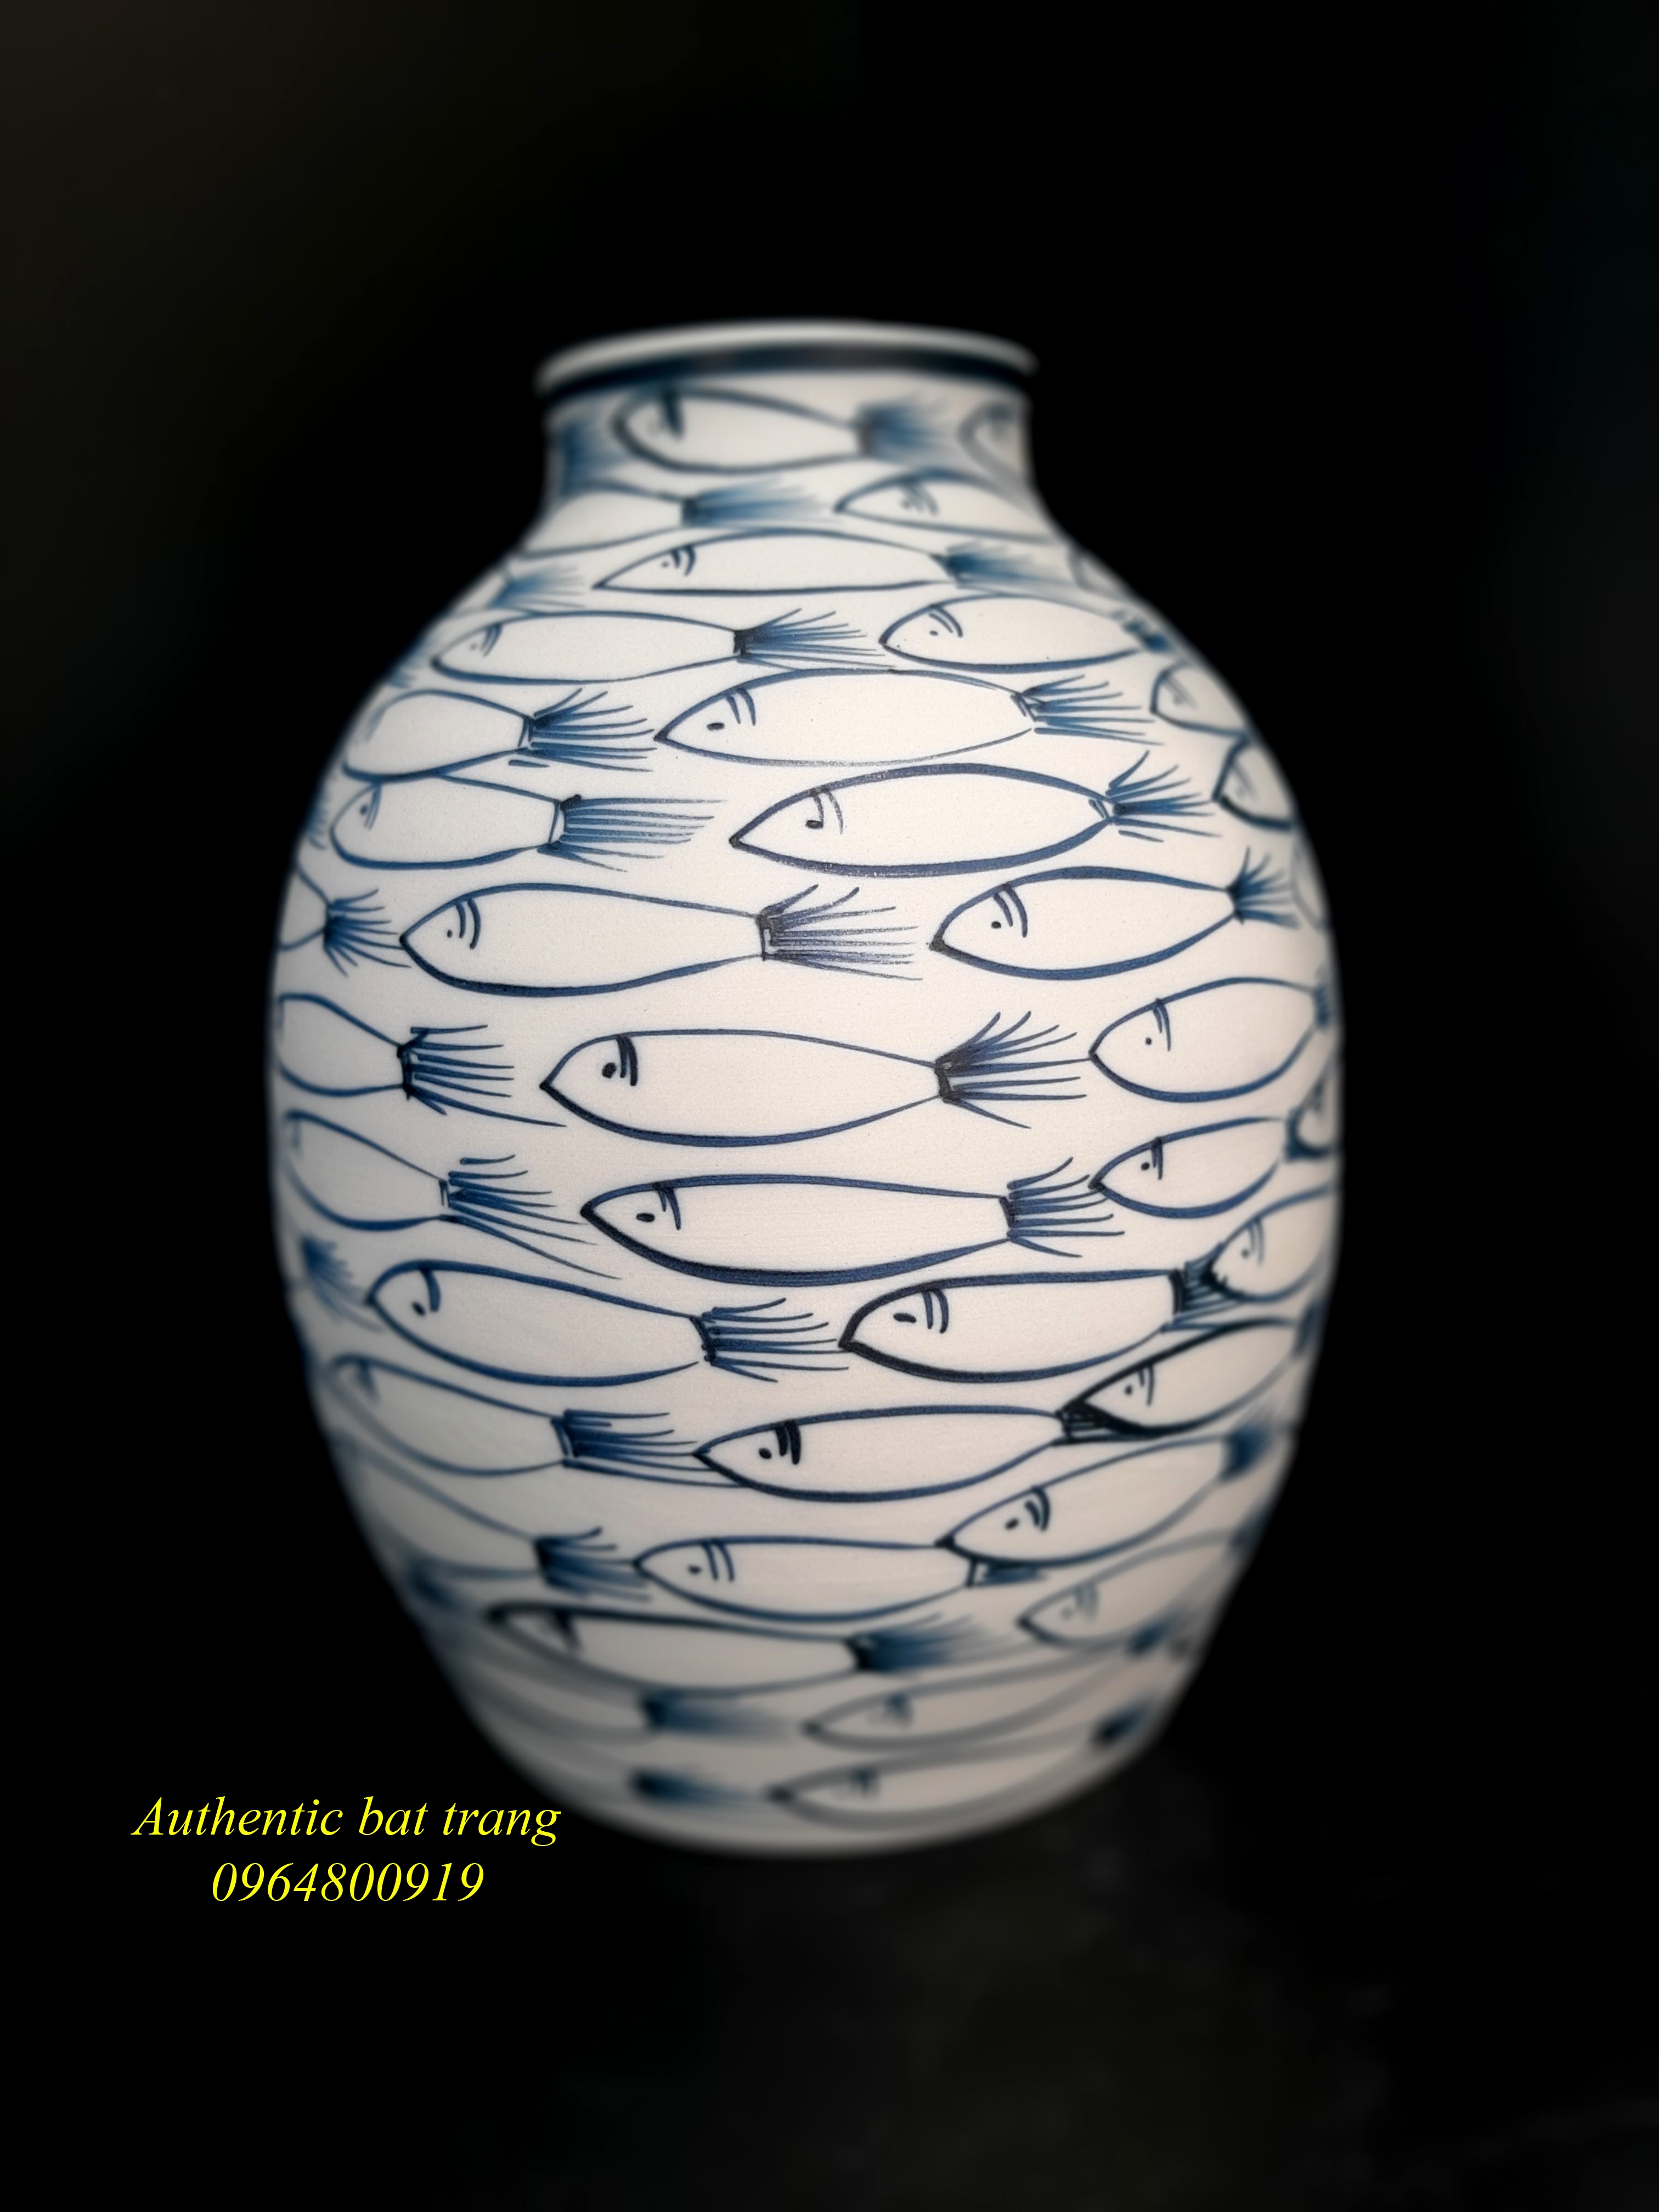 Fishes vase 2 - Bình cắm hoa họa tiết cá đàn - sự kết hợp của truyền thống và hiện đại, sản xuất tại xưởng gốm sứ Authentic bat trang